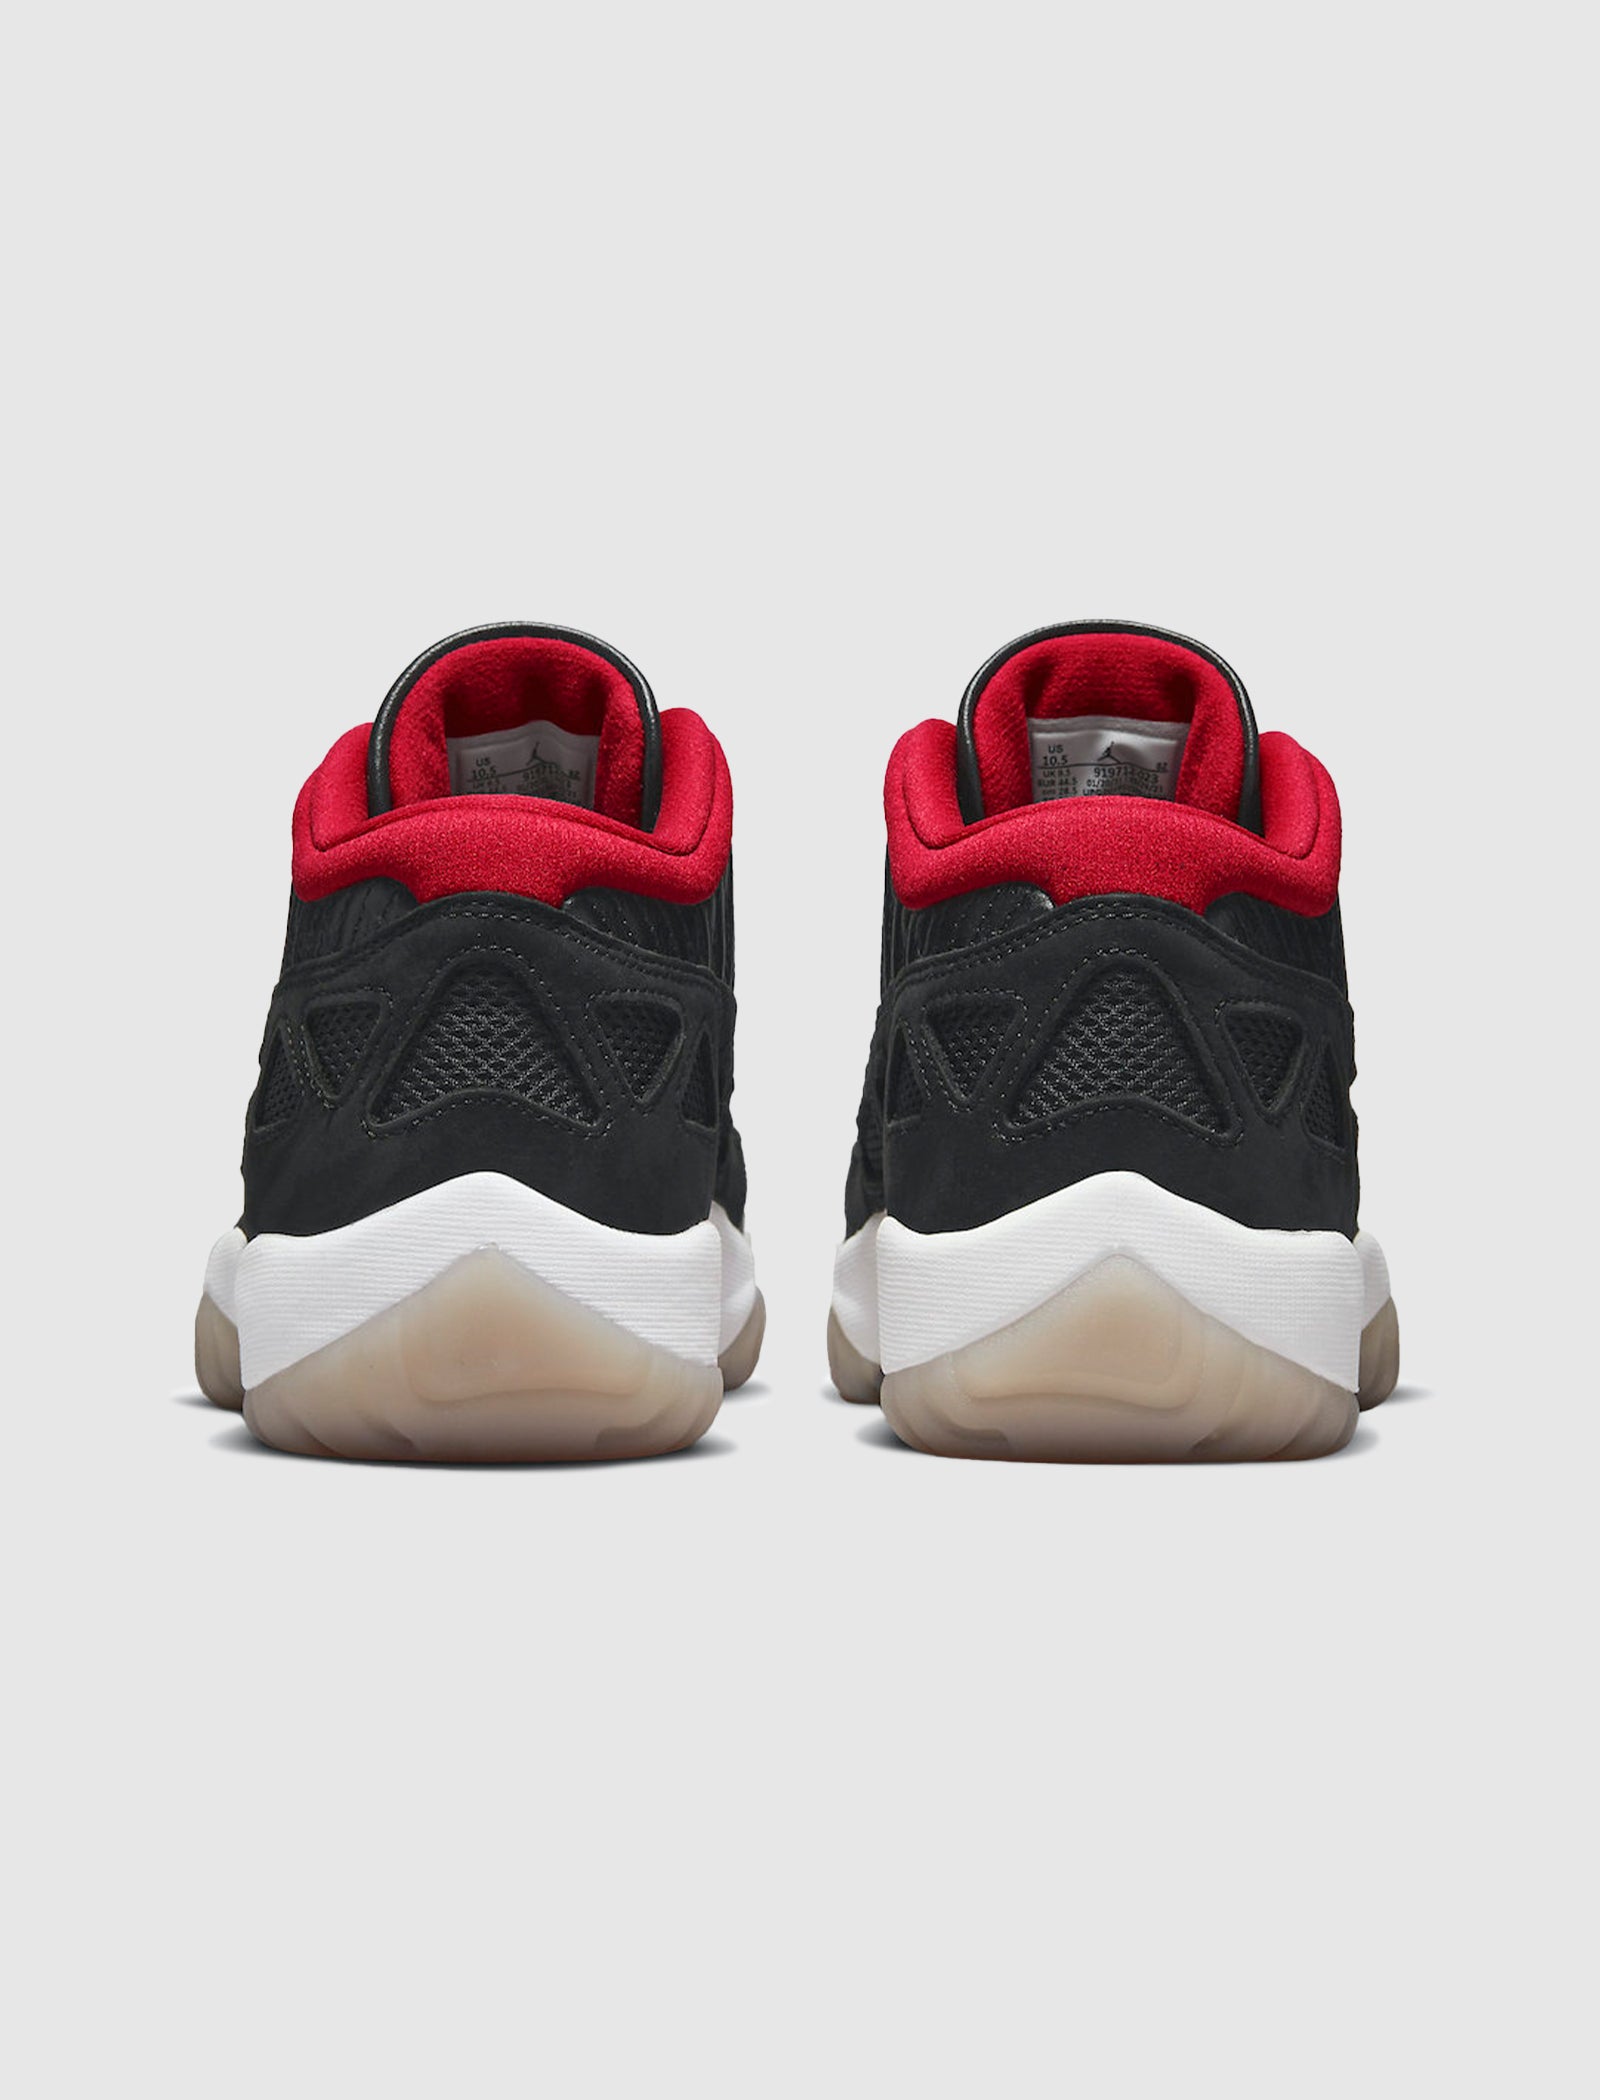 Corporate on Instagram: The Air Jordan 11 Low IE 'Black/White